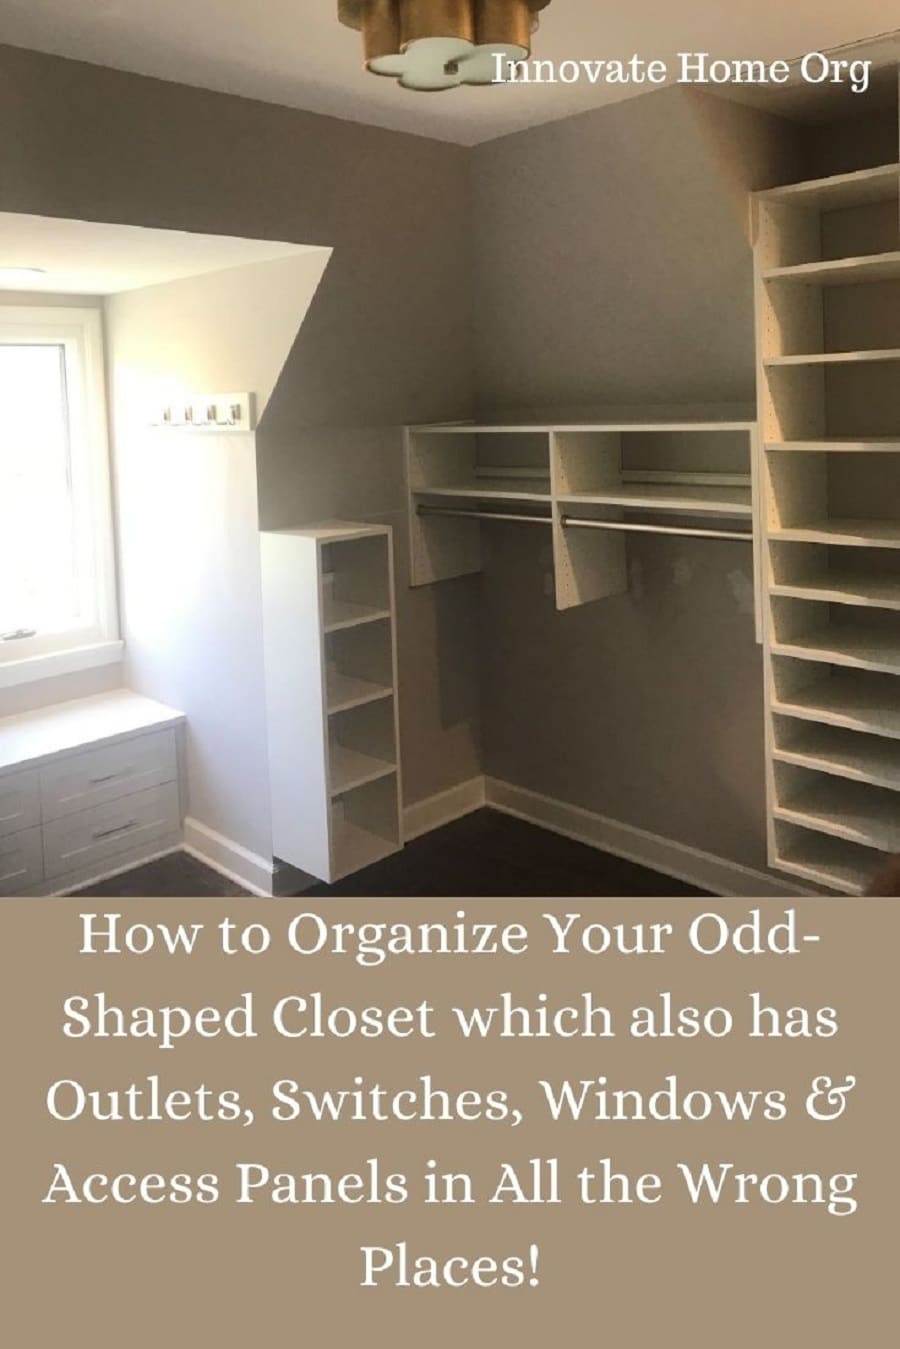 Problem 8 - columbus how to organize odd shaped closet | Innovate Home Org #ClosetOrganization #ClosetStorage #ClosetDesign